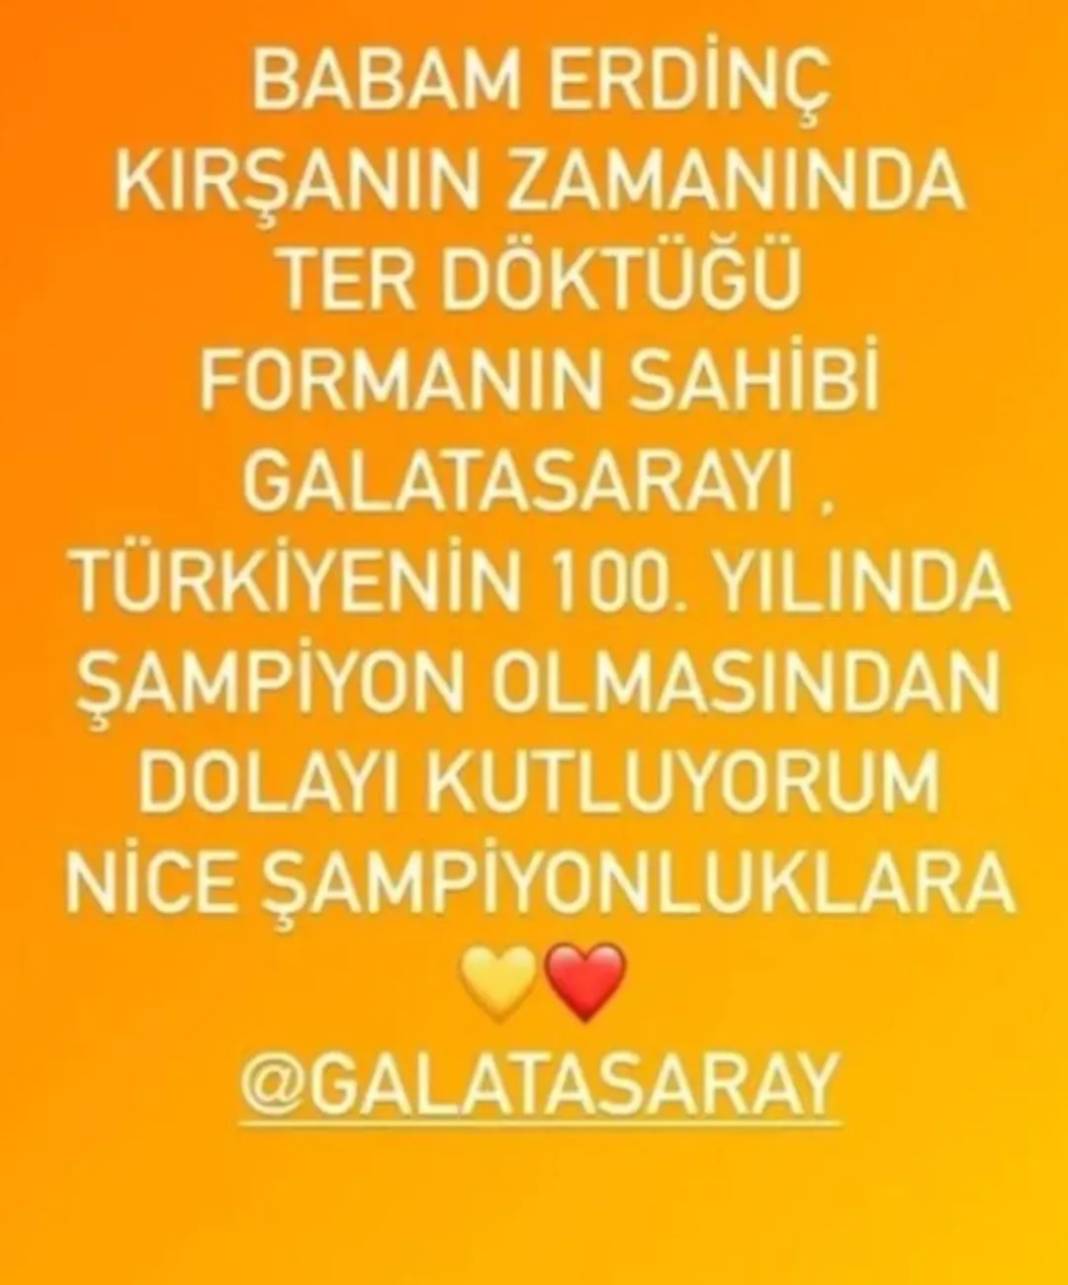 Galatasaray'ın şampiyonluğu sonrası ünlü isimlerden paylaşımlar art arda geldi! 2